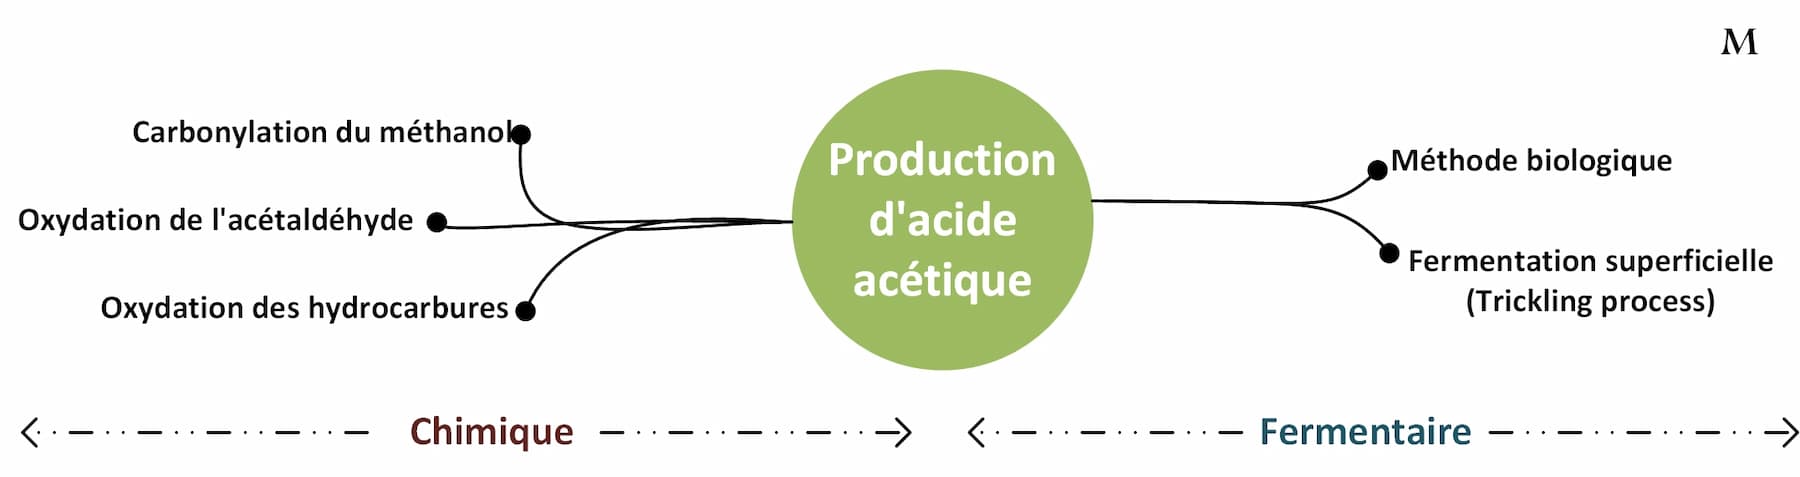 Production d'acide acétique